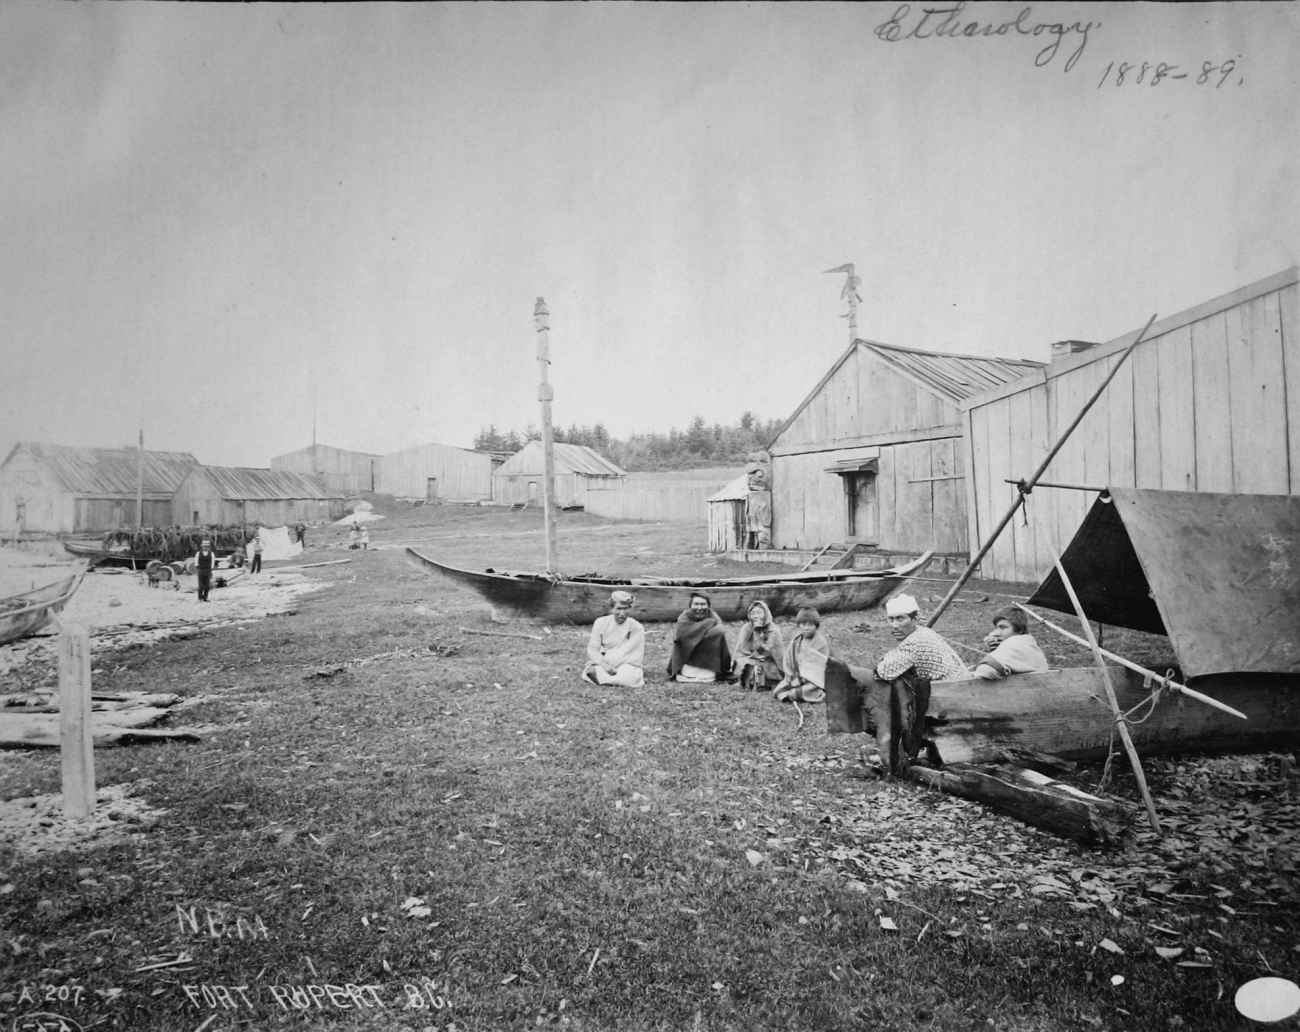 Fort Rupert, BC, ethnology, 1888-89